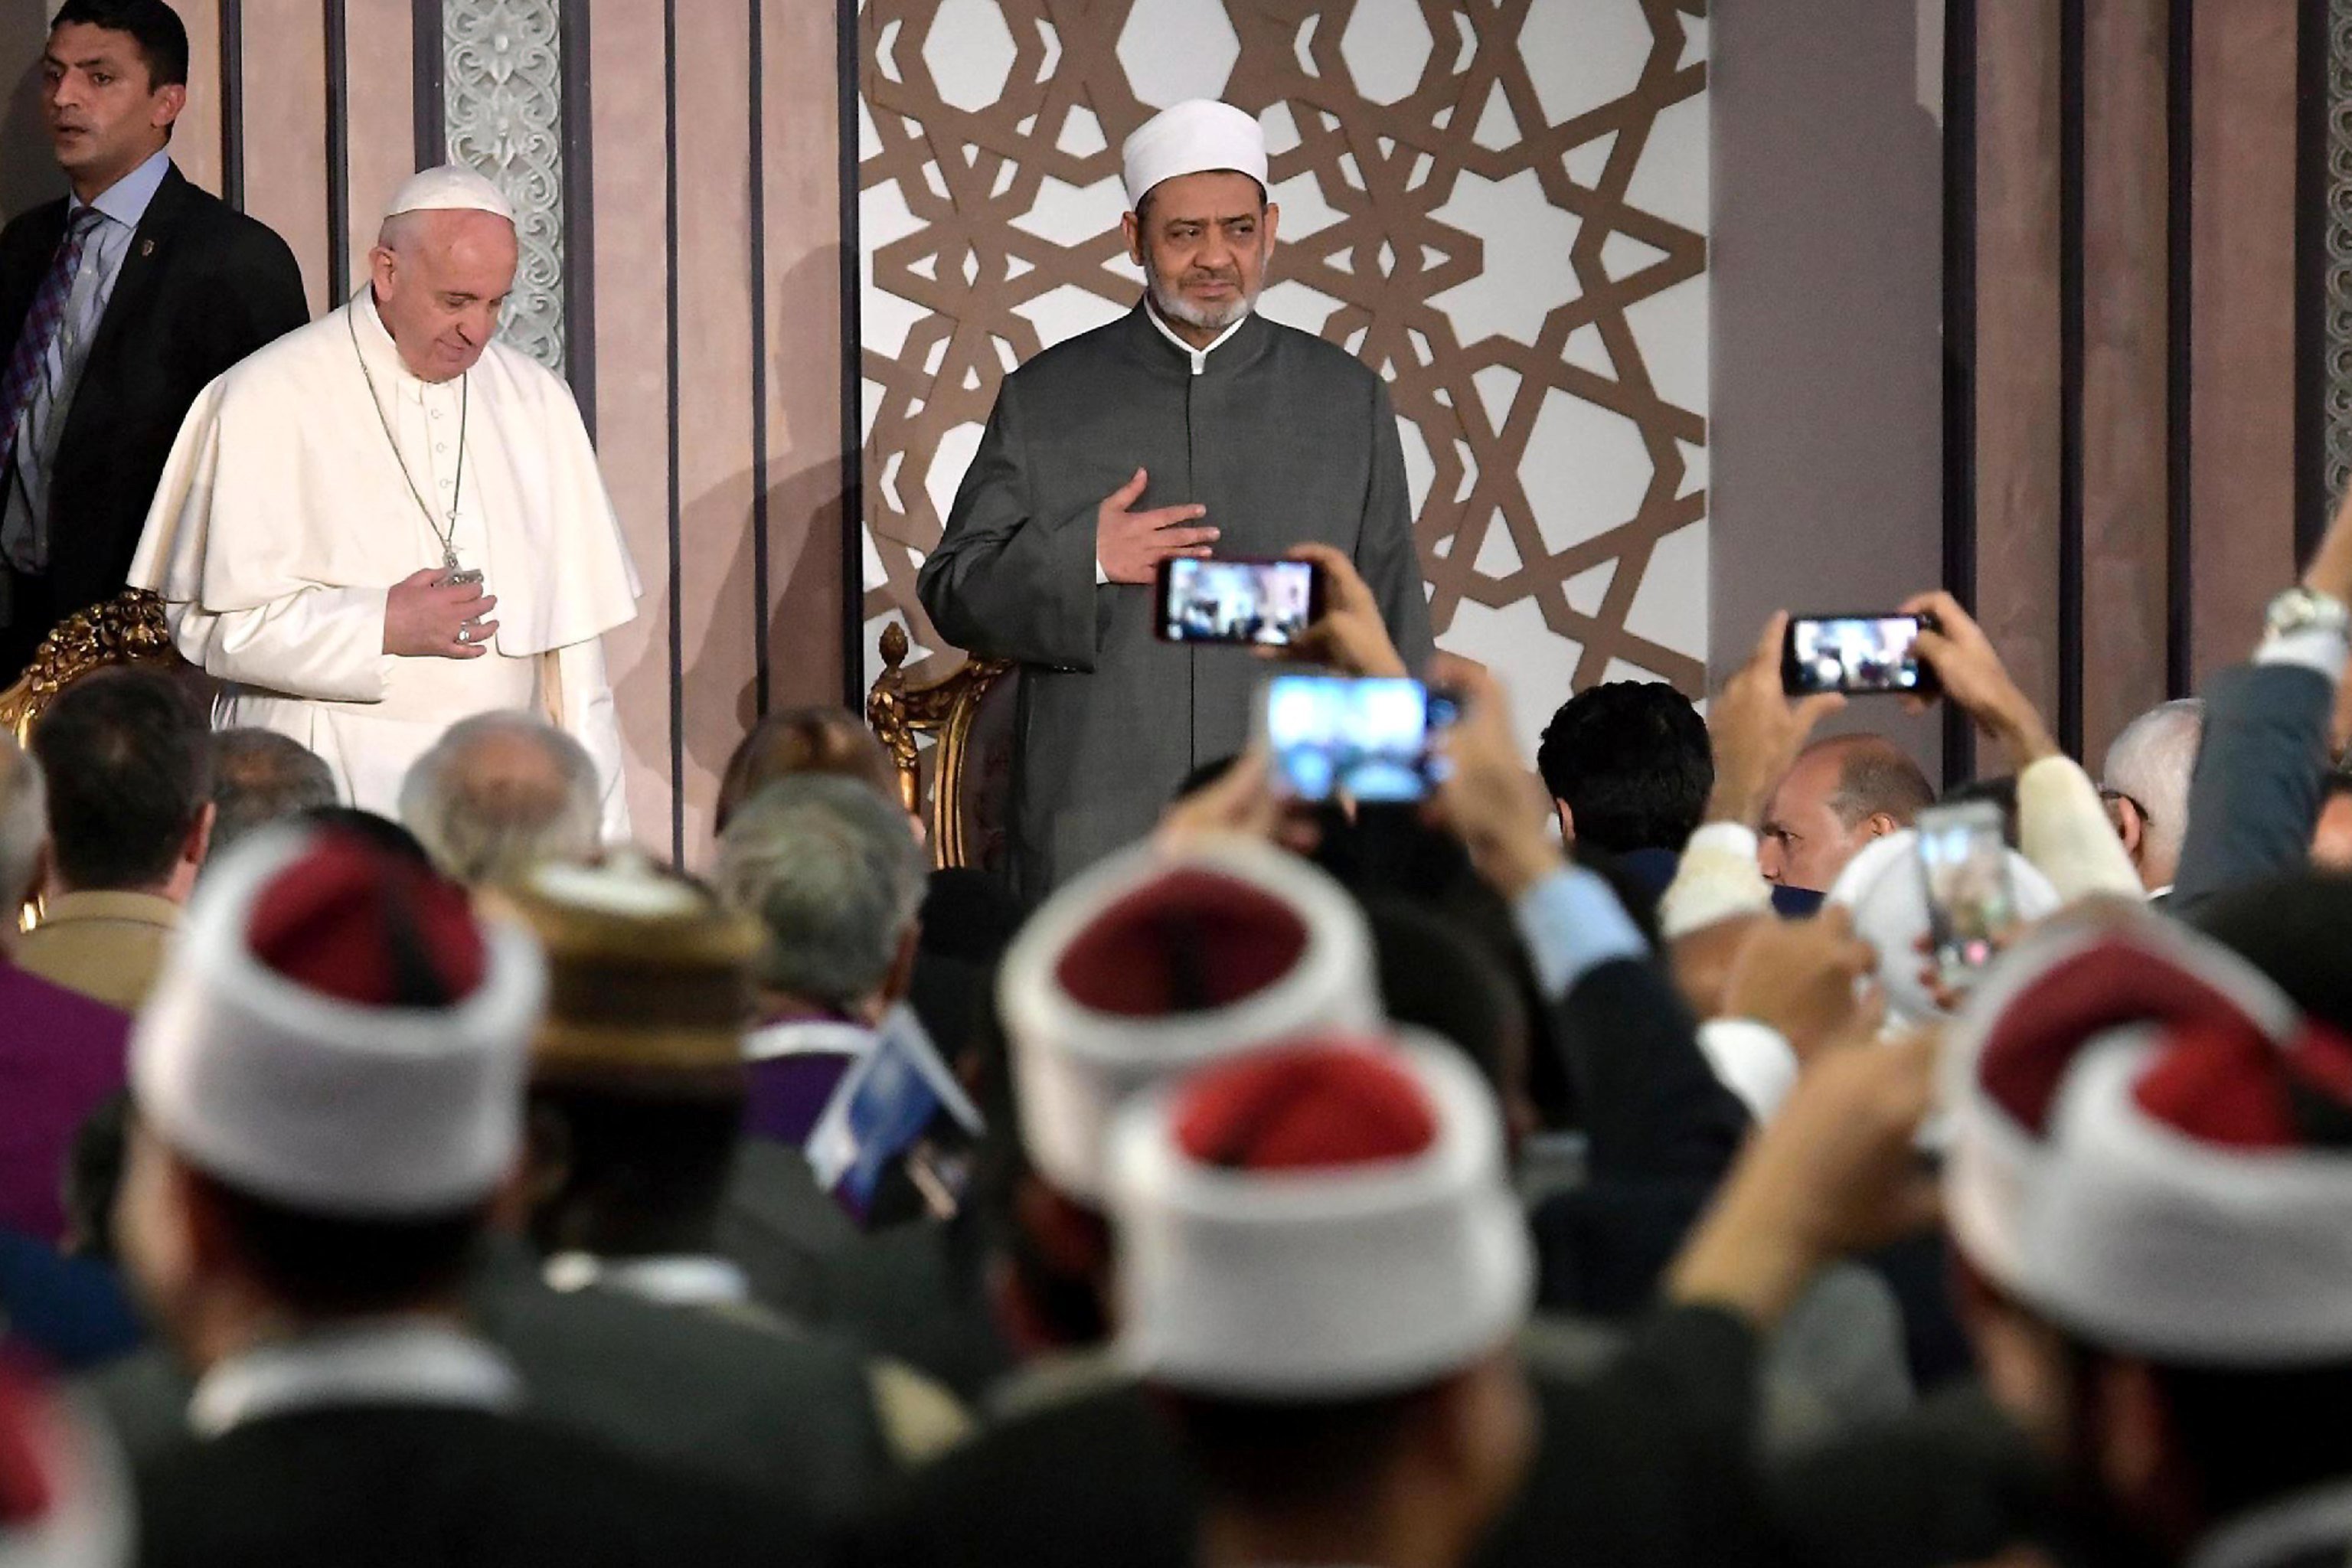 El Papa a los líderes musulmanes: "Digamos no a la violencia en nombre de Dios"